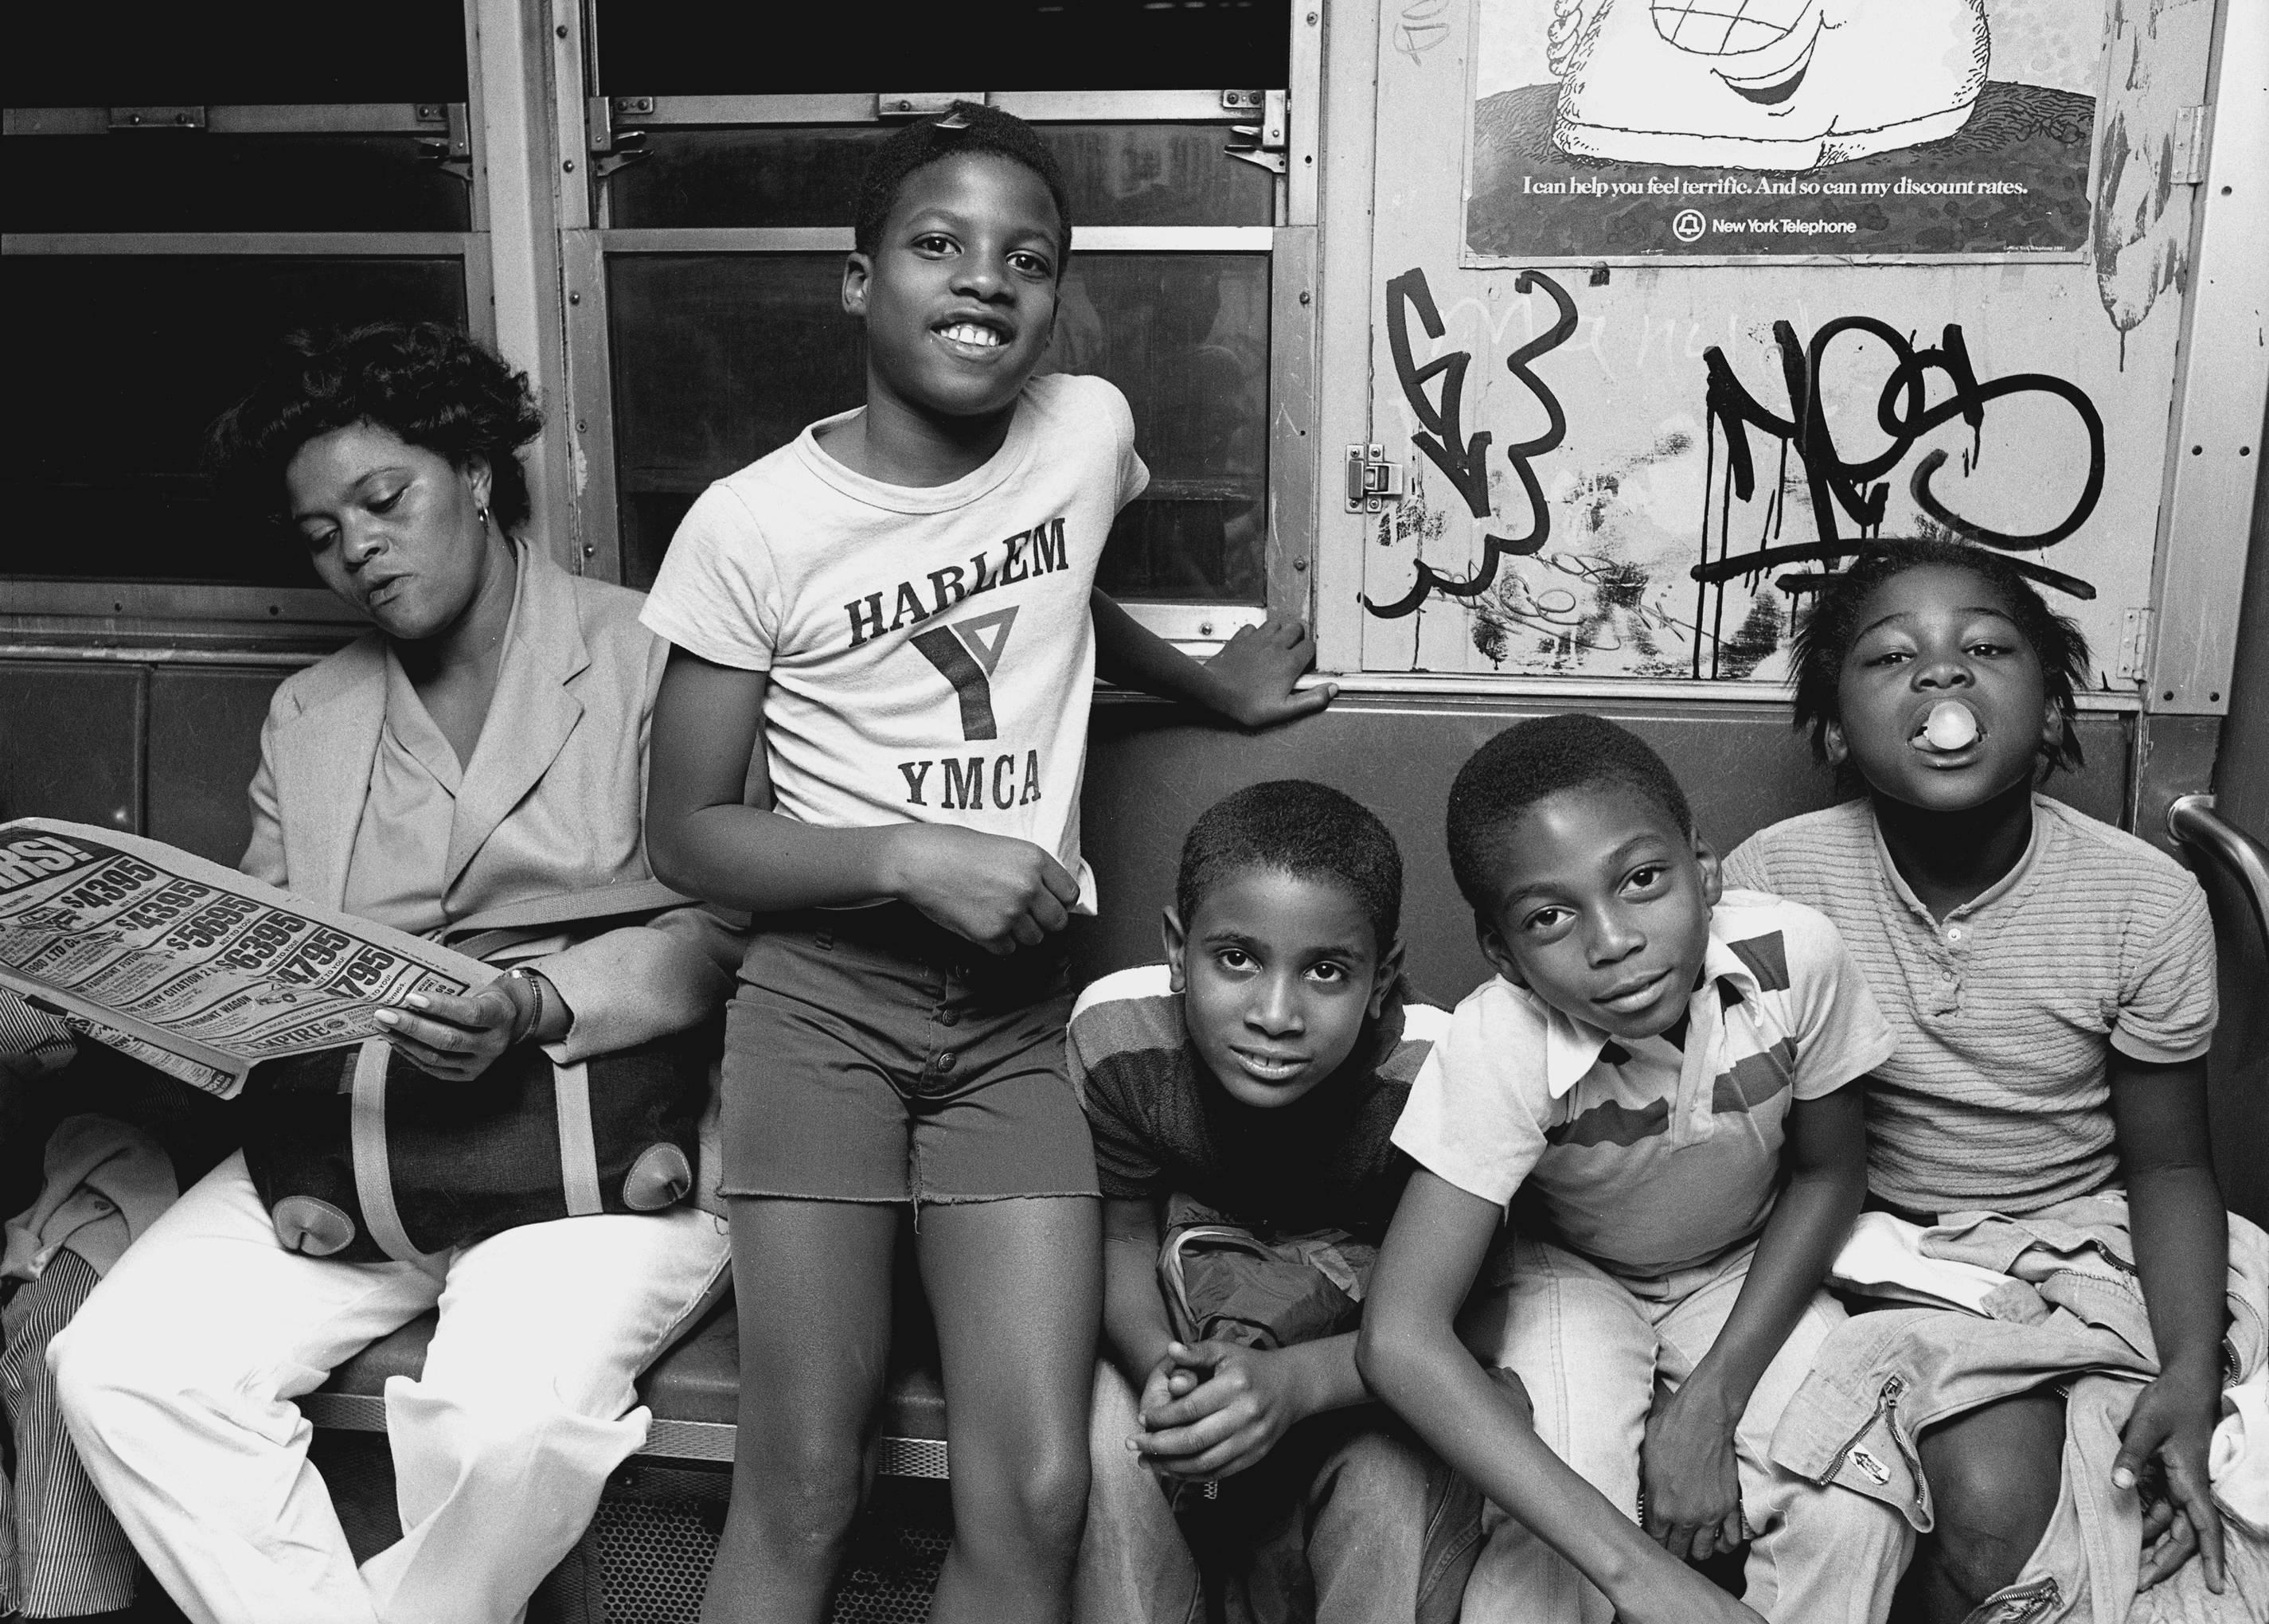 Portrait Photograph John Conn - Subway 30, NYC, années 1980, New York  Ville, enfants, photographie, métro, édition limitée